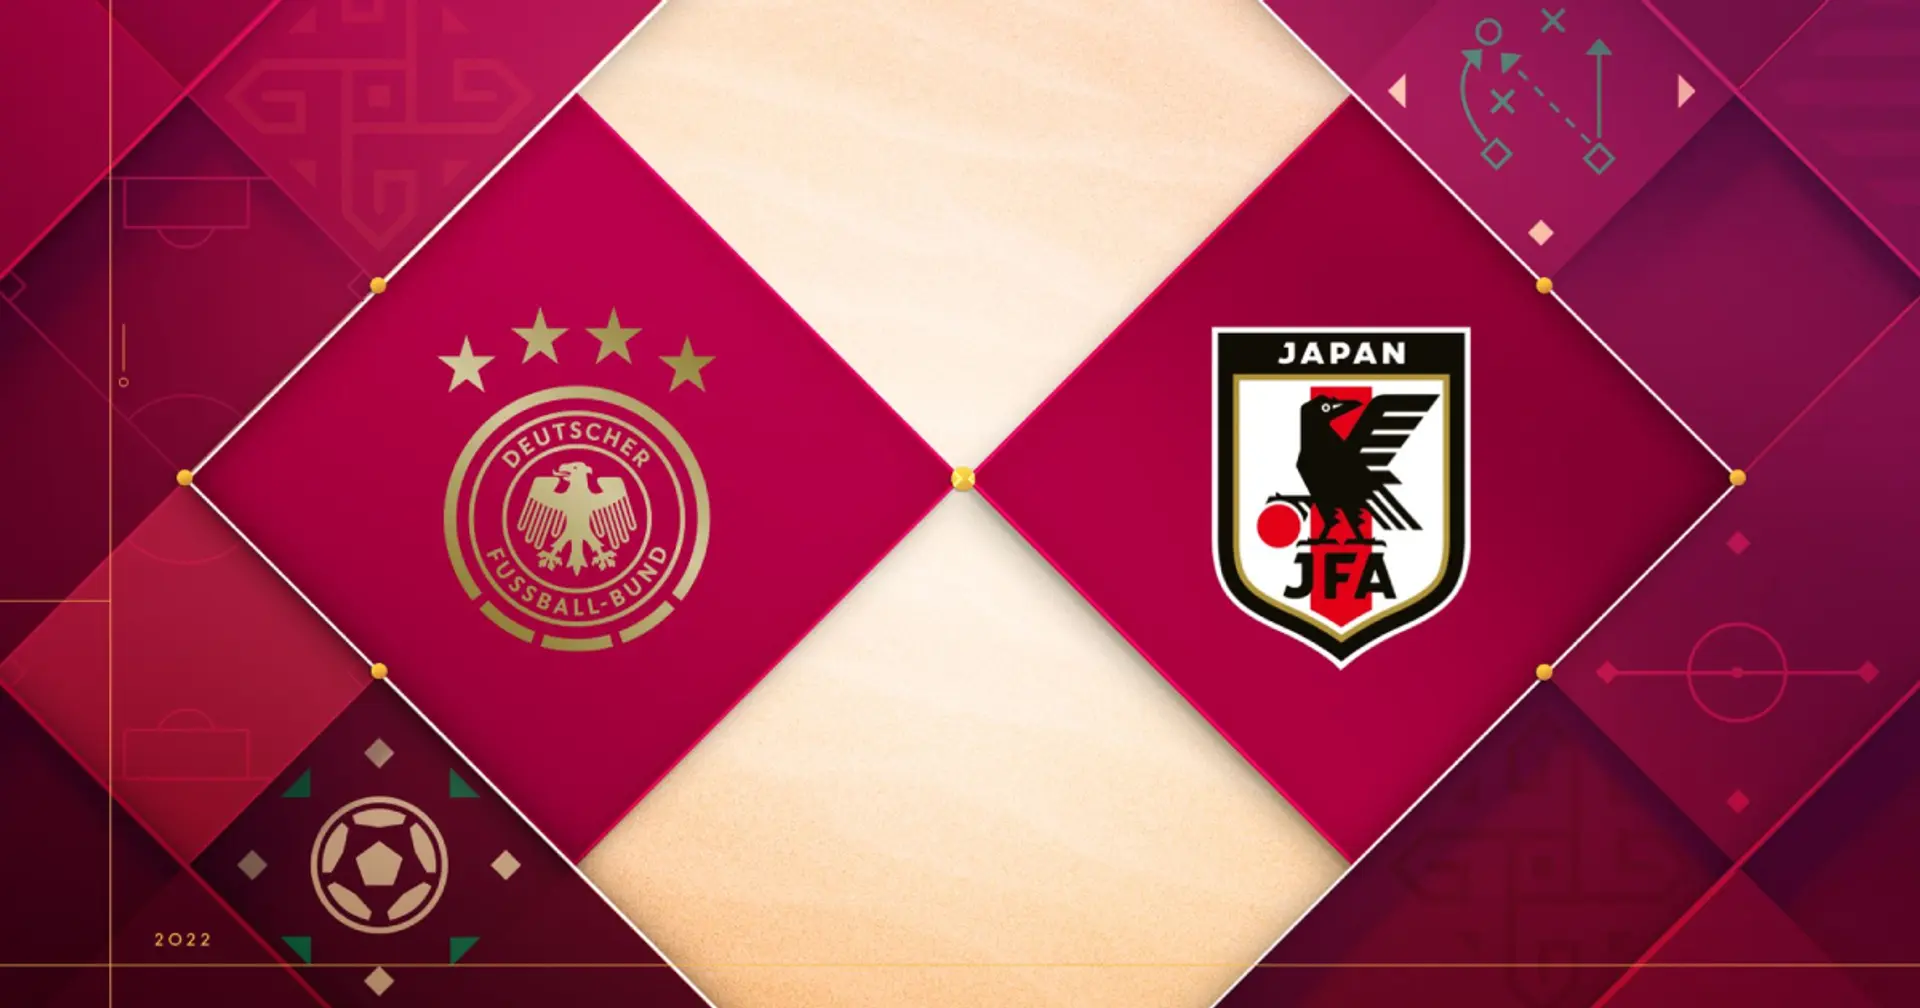 Alemania vs Japón: se revelan las alineaciones oficiales de los equipos para el choque de la Copa del Mundo